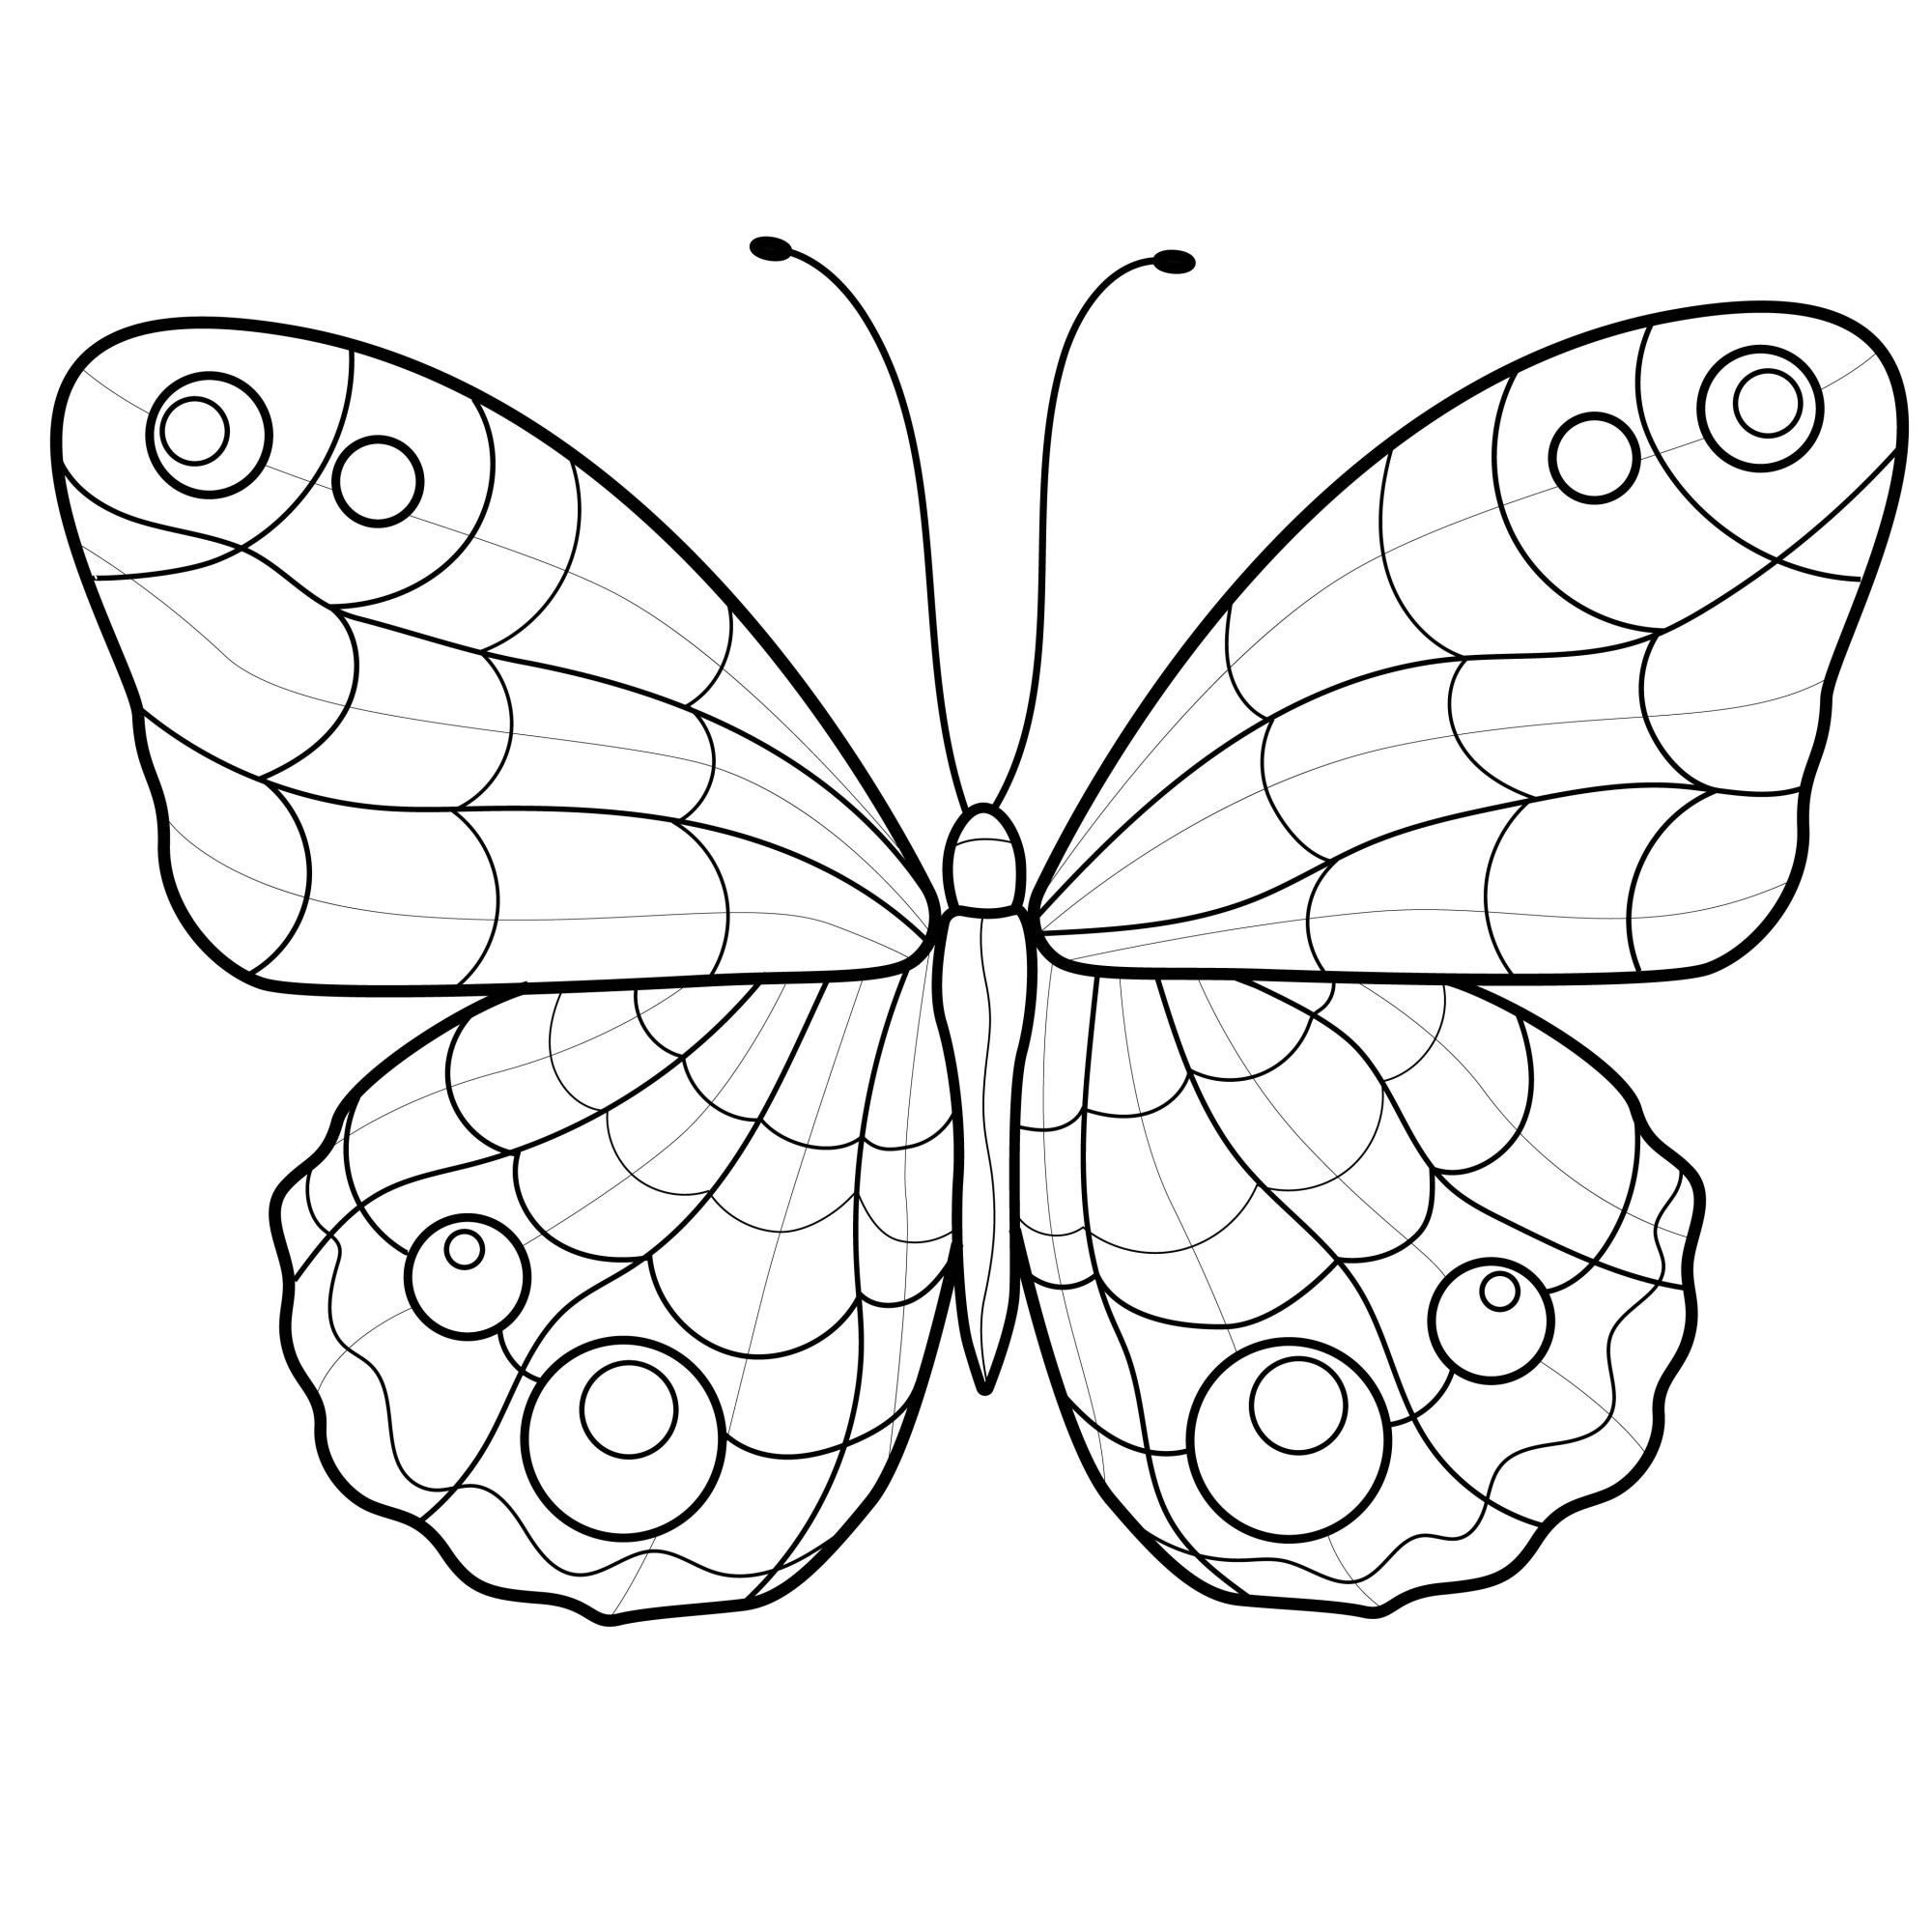 Раскраска для детей: красивая бабочка